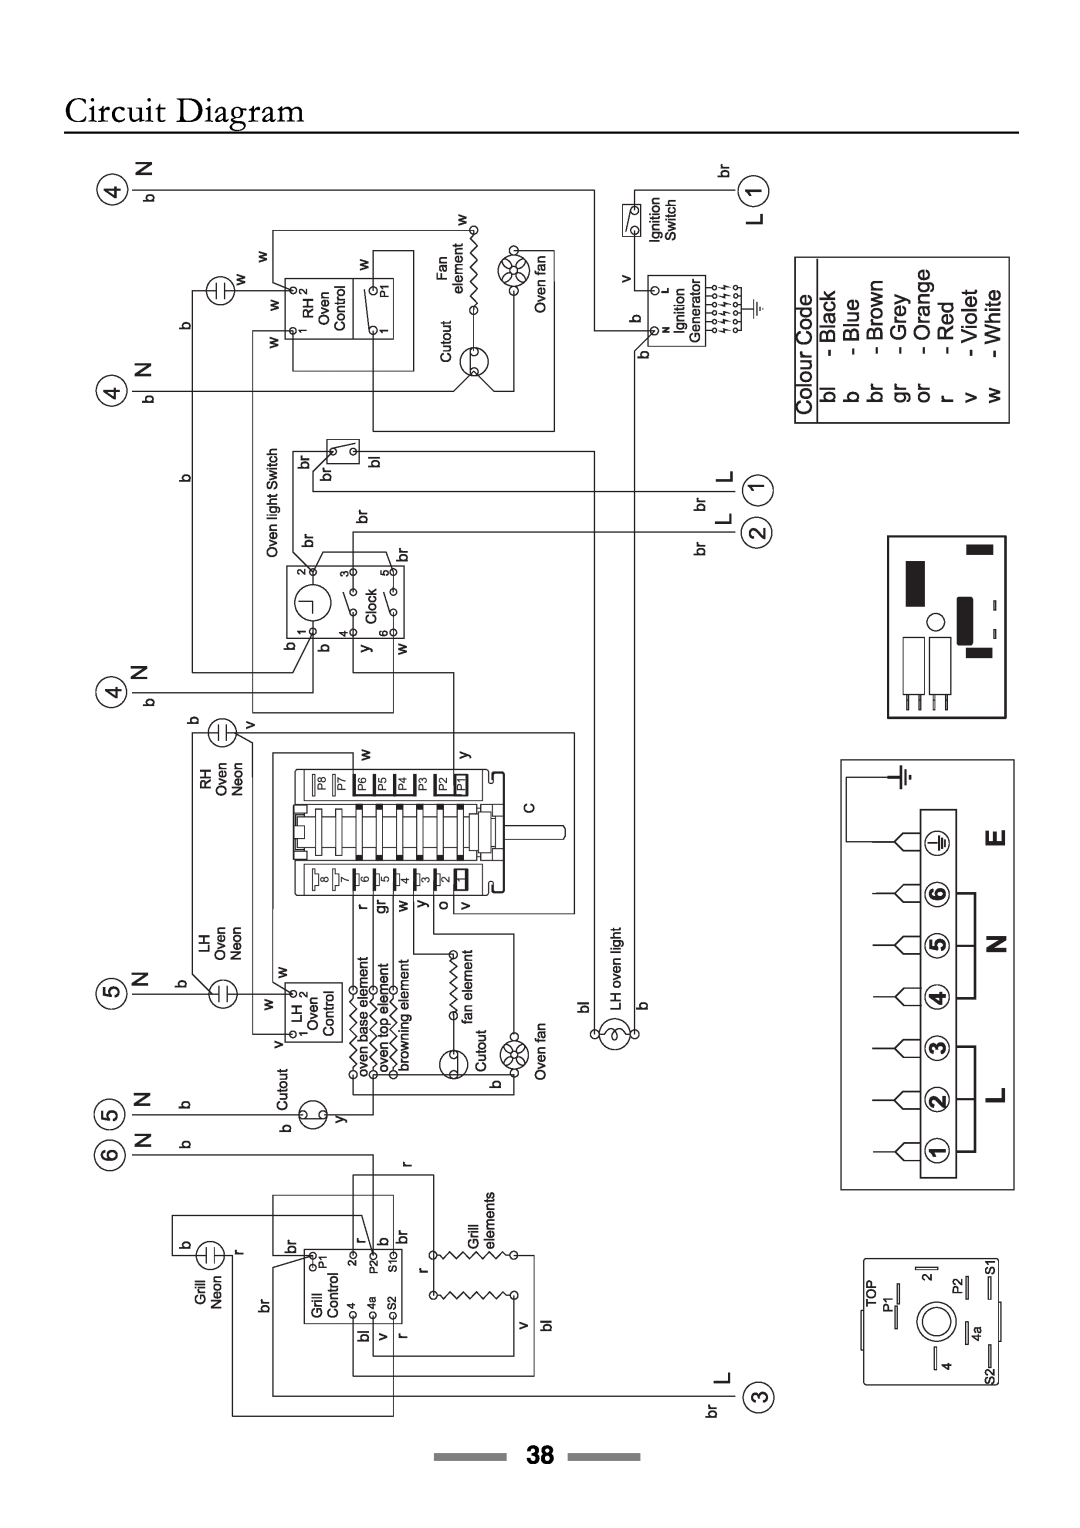 Rangemaster 90 manual Circuit Diagram 